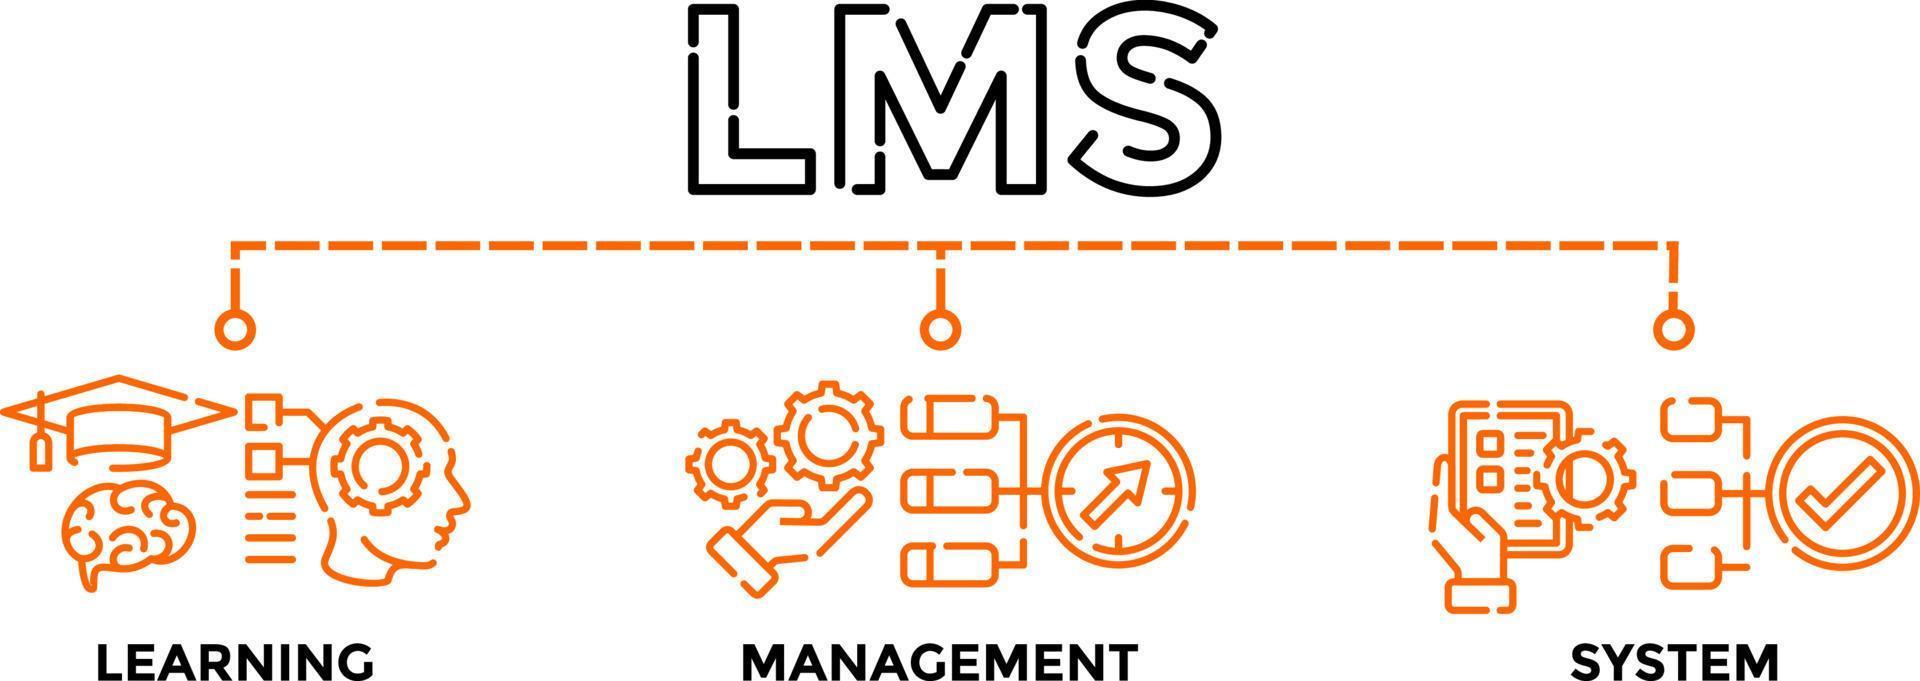 lms - aan het leren beheer systeem. lms banier web vector illustratie concept voor met pictogrammen.